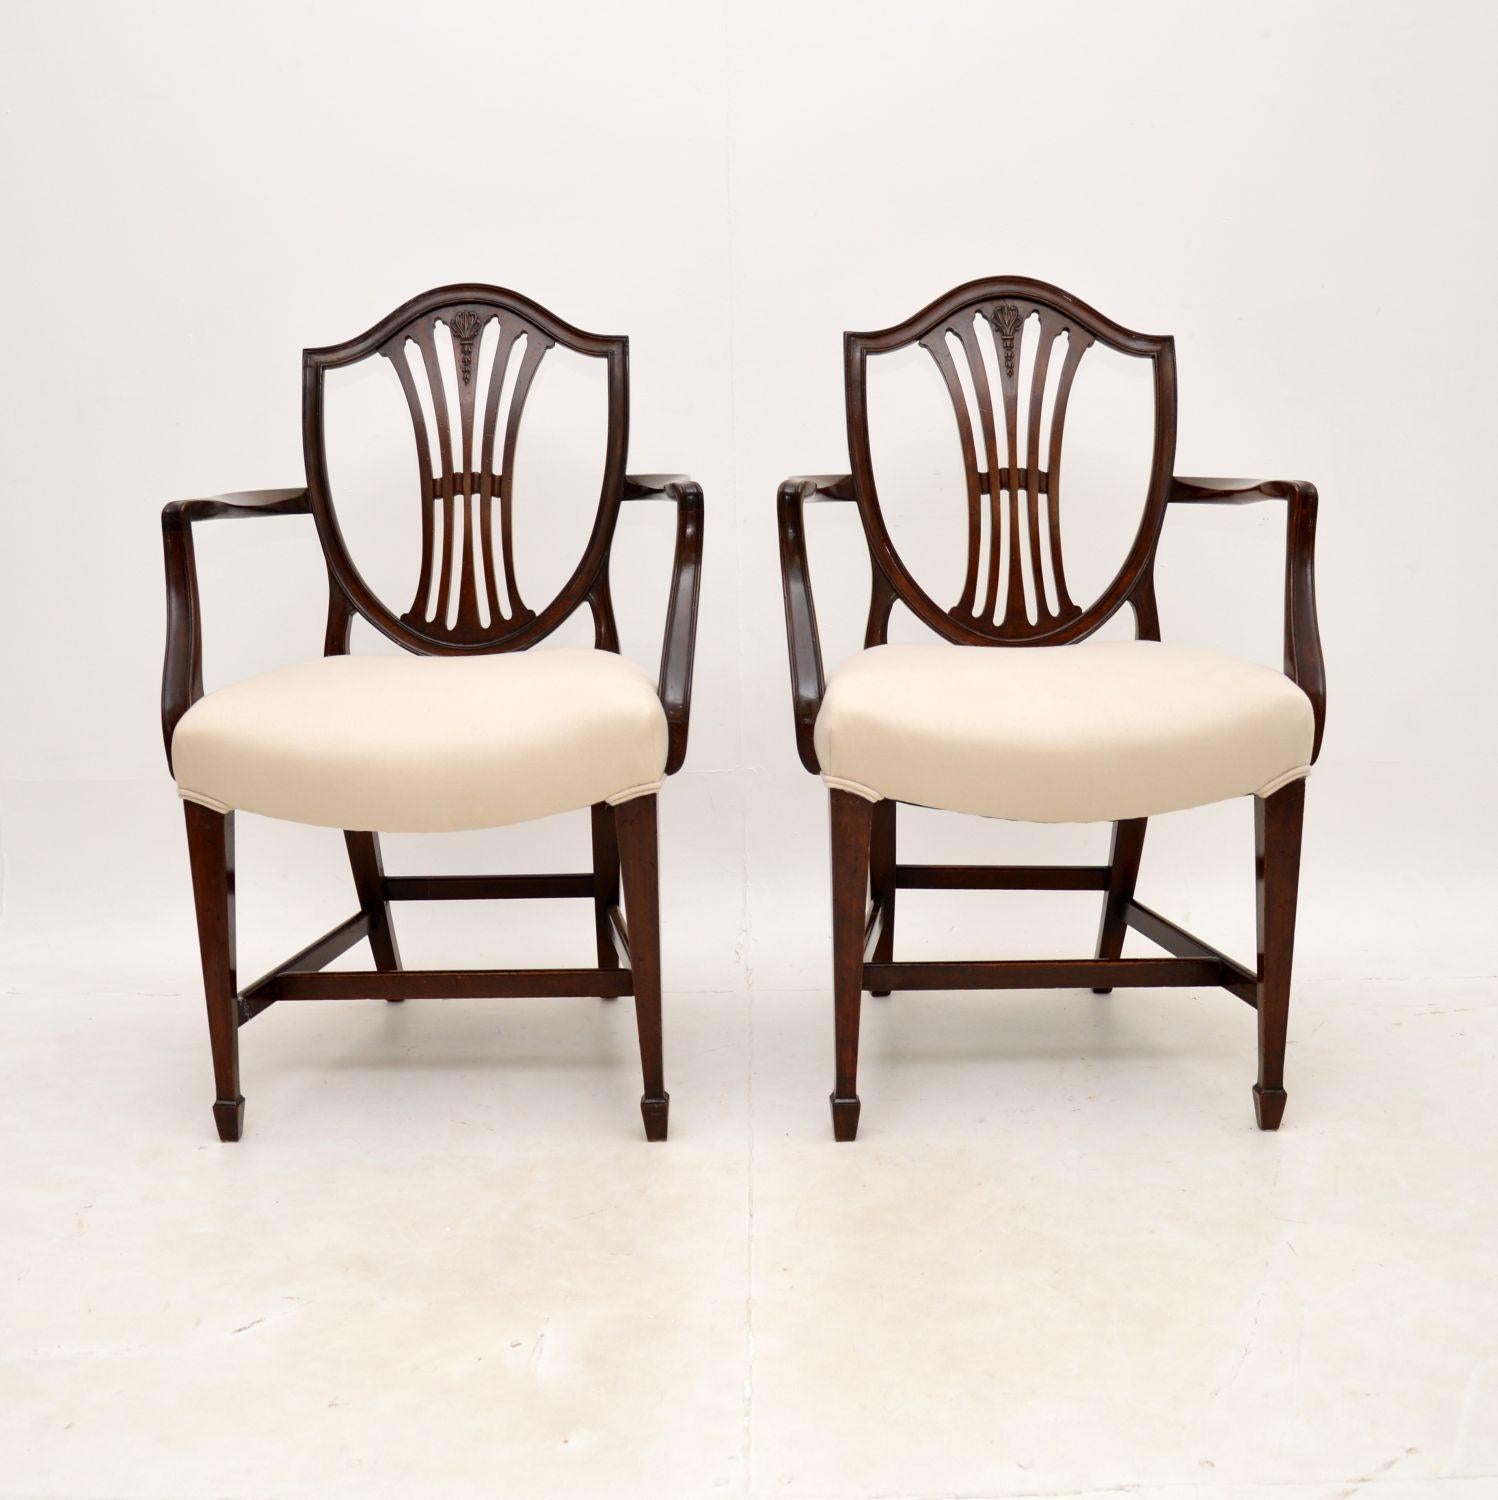 Une belle paire de fauteuils anciens de style géorgien. Fabriqués en Angleterre, ils datent d'environ 1900-1910.

Ils sont extrêmement bien faits et magnifiquement conçus dans le style Hepplewhite. Les dos de bouclier percés ont une belle forme et